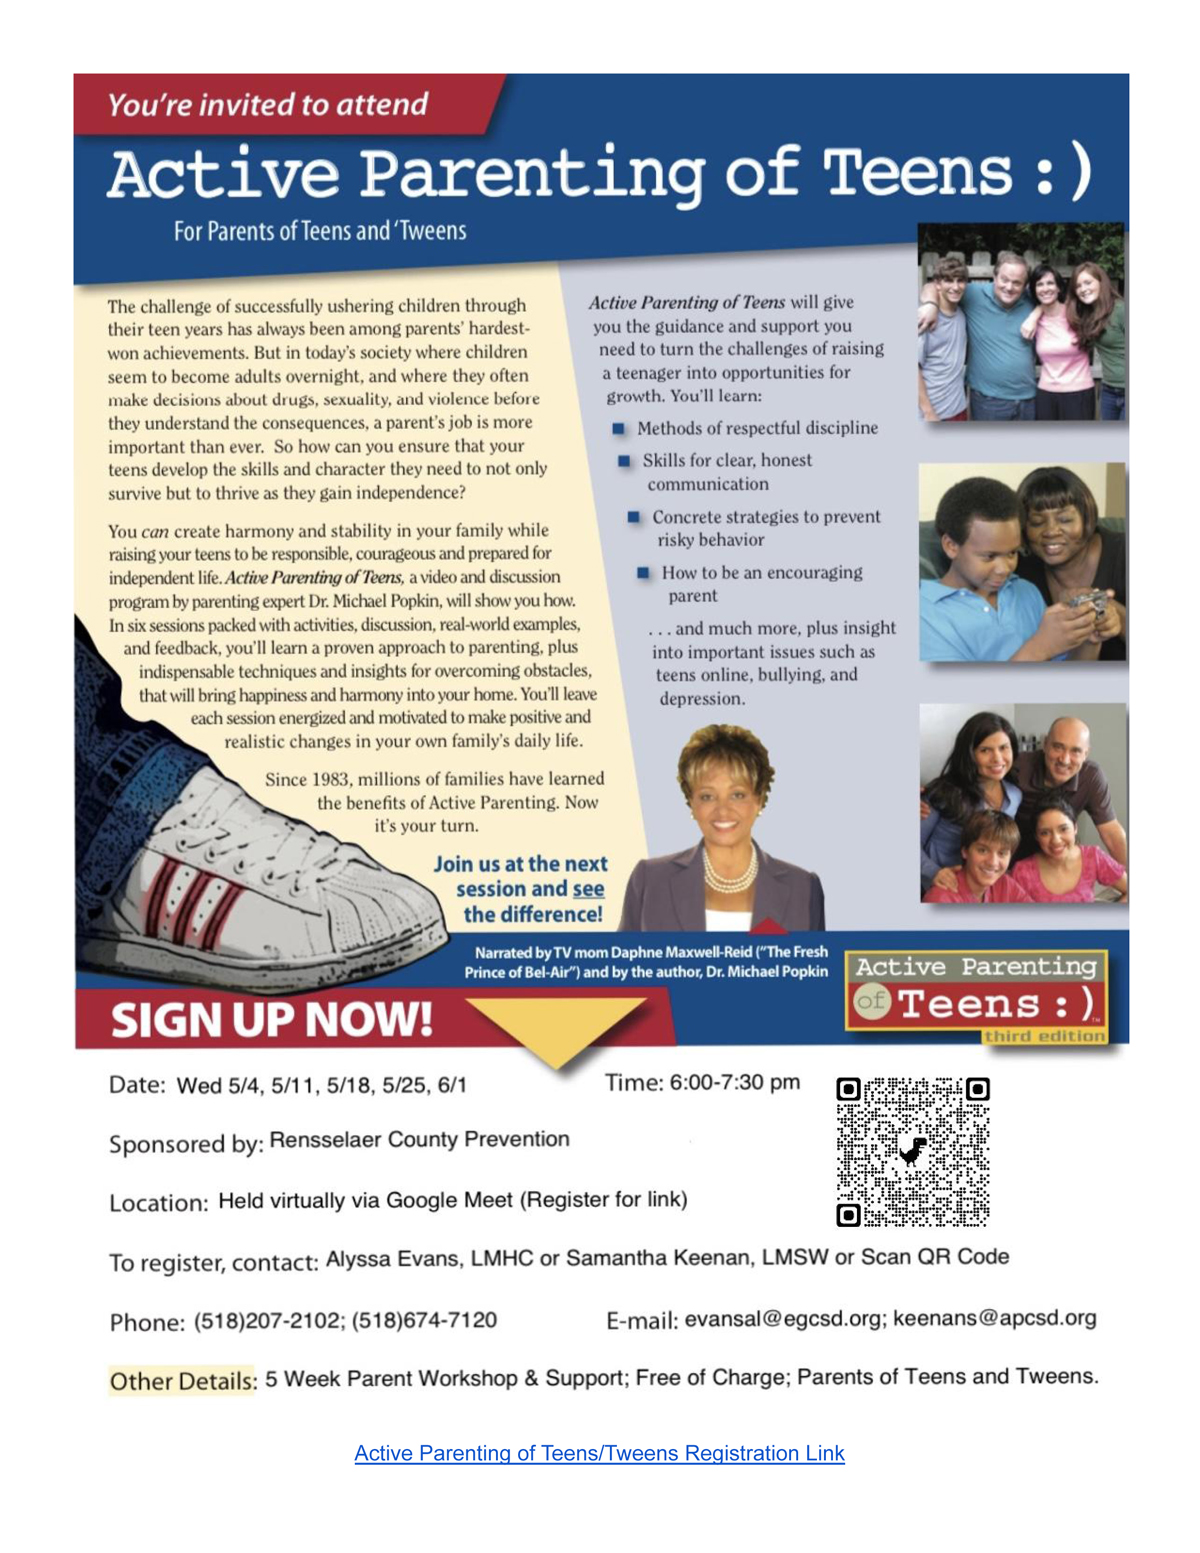 Active Parenting Workshop flyer